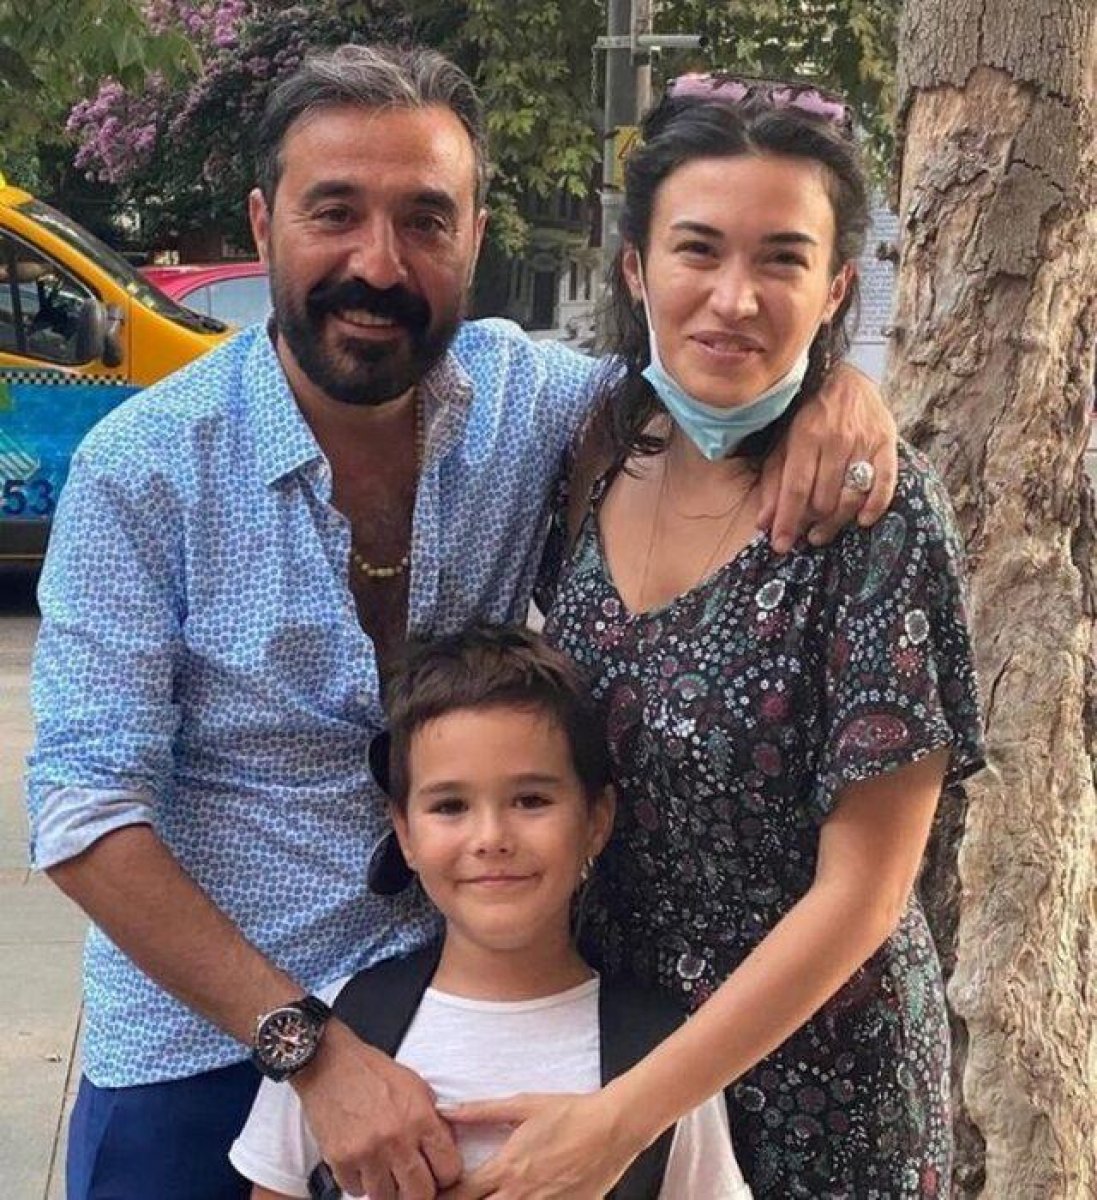 Mustafa Üstündağ'ın 10 yıl aynı yastığa baş koyduğu eski eşi Gönül Dağı'nın yıldızı çıktı! Duyanlar inanamıyor